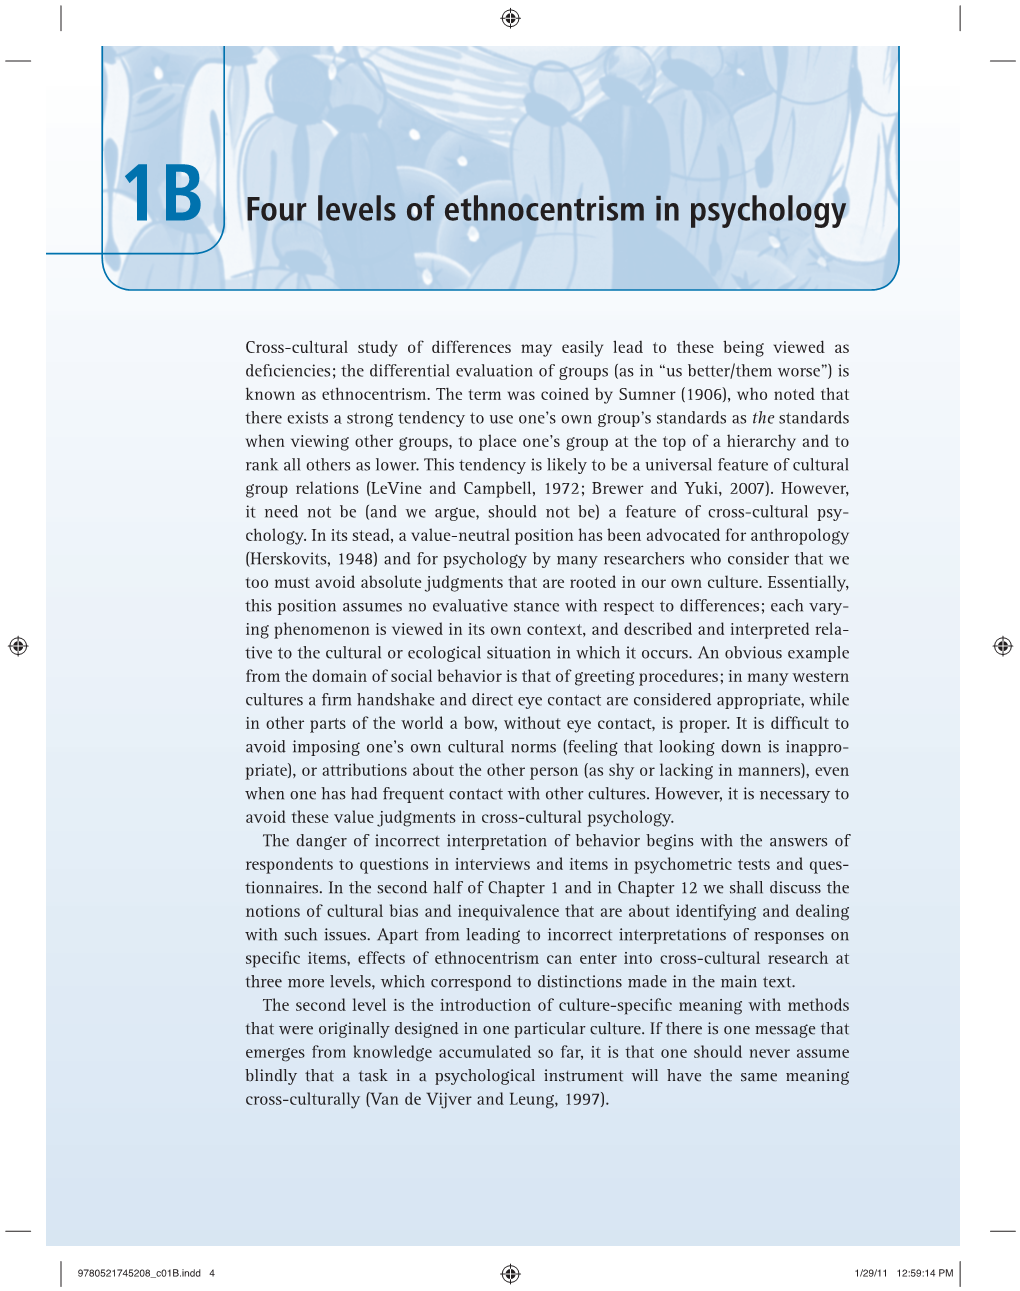 Four Levels of Ethnocentrism in Psychology